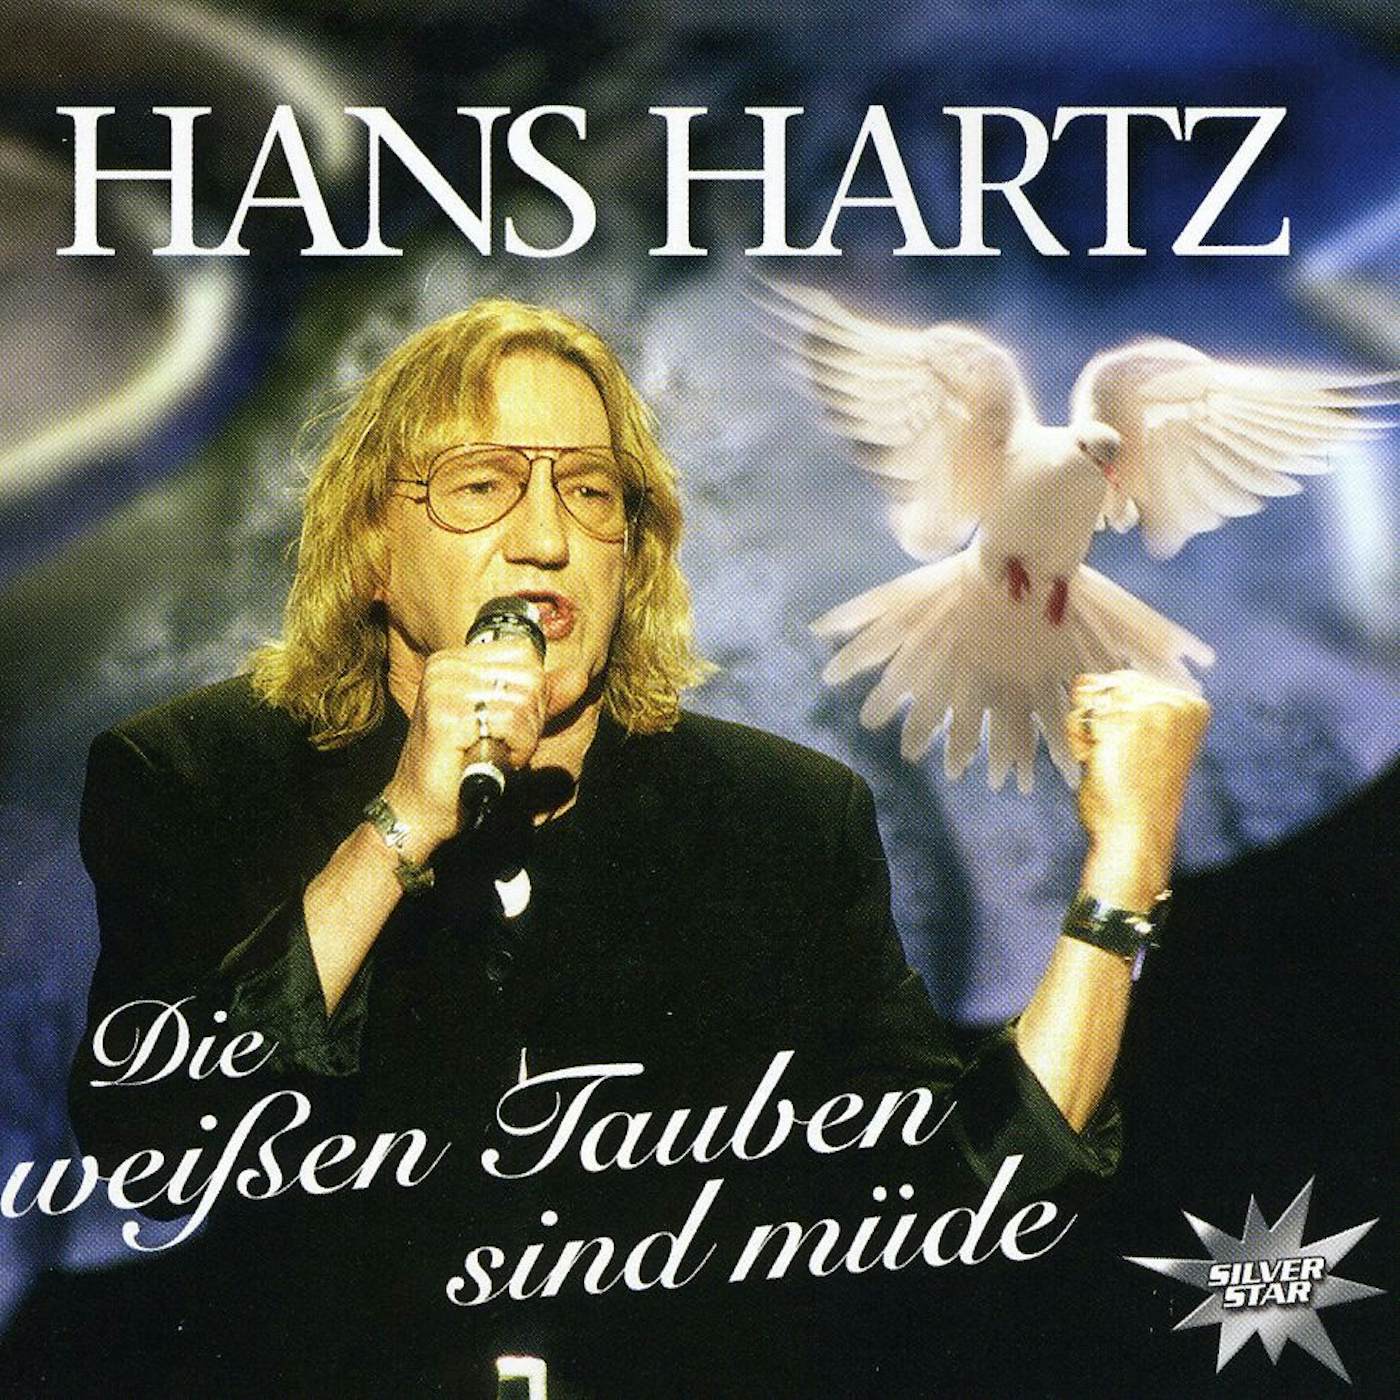 Hans Hartz DIE WEISSEN TAUBEN SIND MUDE CD